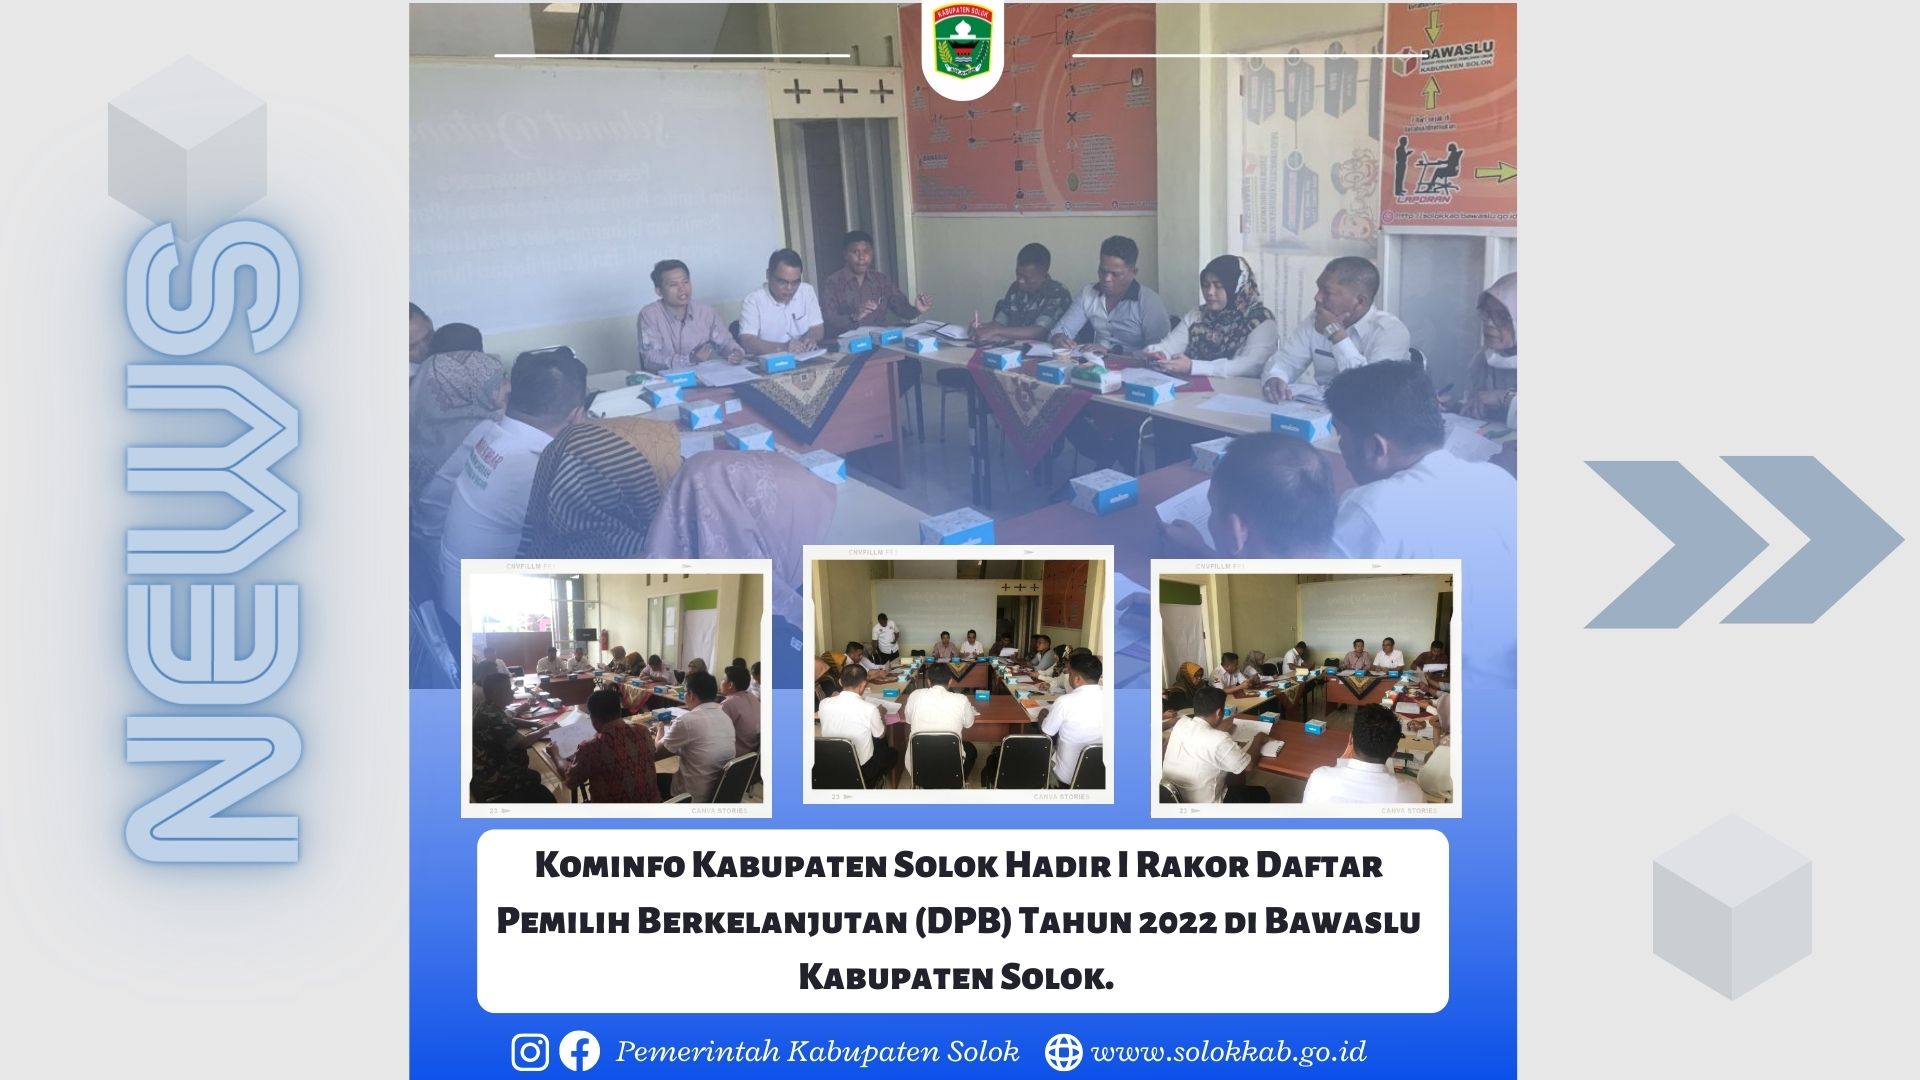 Kominfo Kabupaten Solok Hadir I Rakor Daftar Pemilih Berkelanjutan (DPB) Tahun 2022 di Bawaslu Kabupaten Solok. 